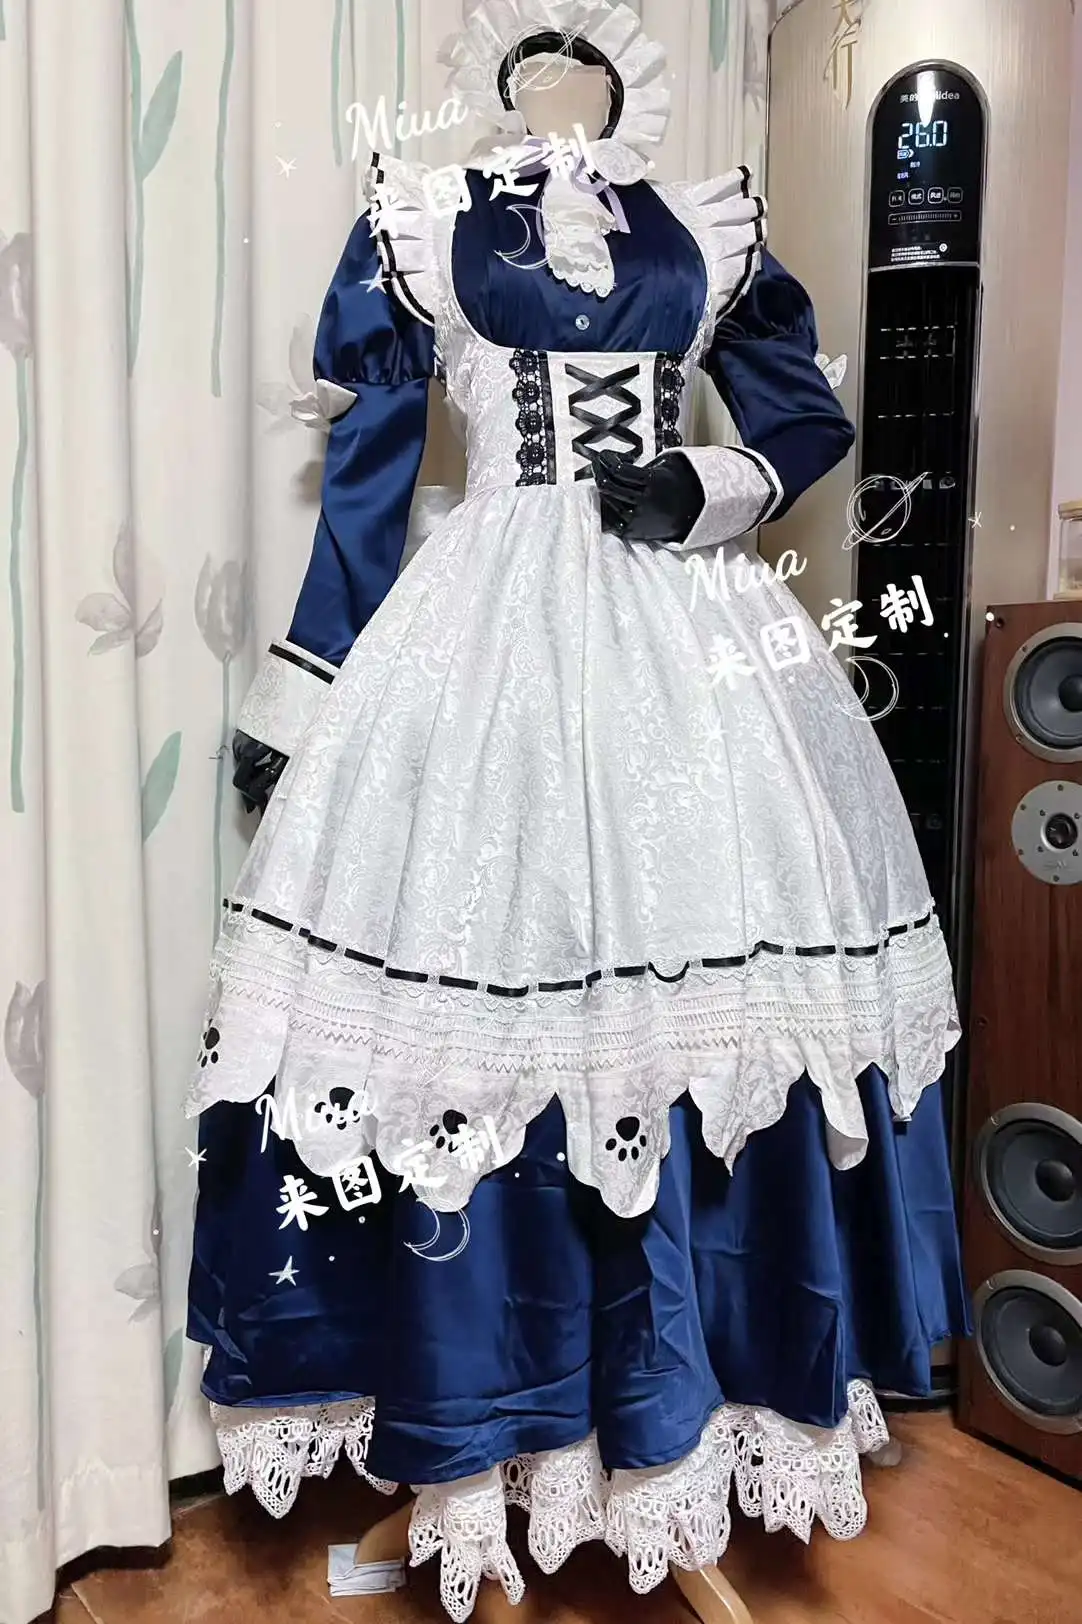 

Аниме игра Vtuber Hololive Inugami Korone Nekomata Okayu горничная Платье Unifrom косплей костюм Хэллоуин Женщины Бесплатная доставка 2022 Новинка